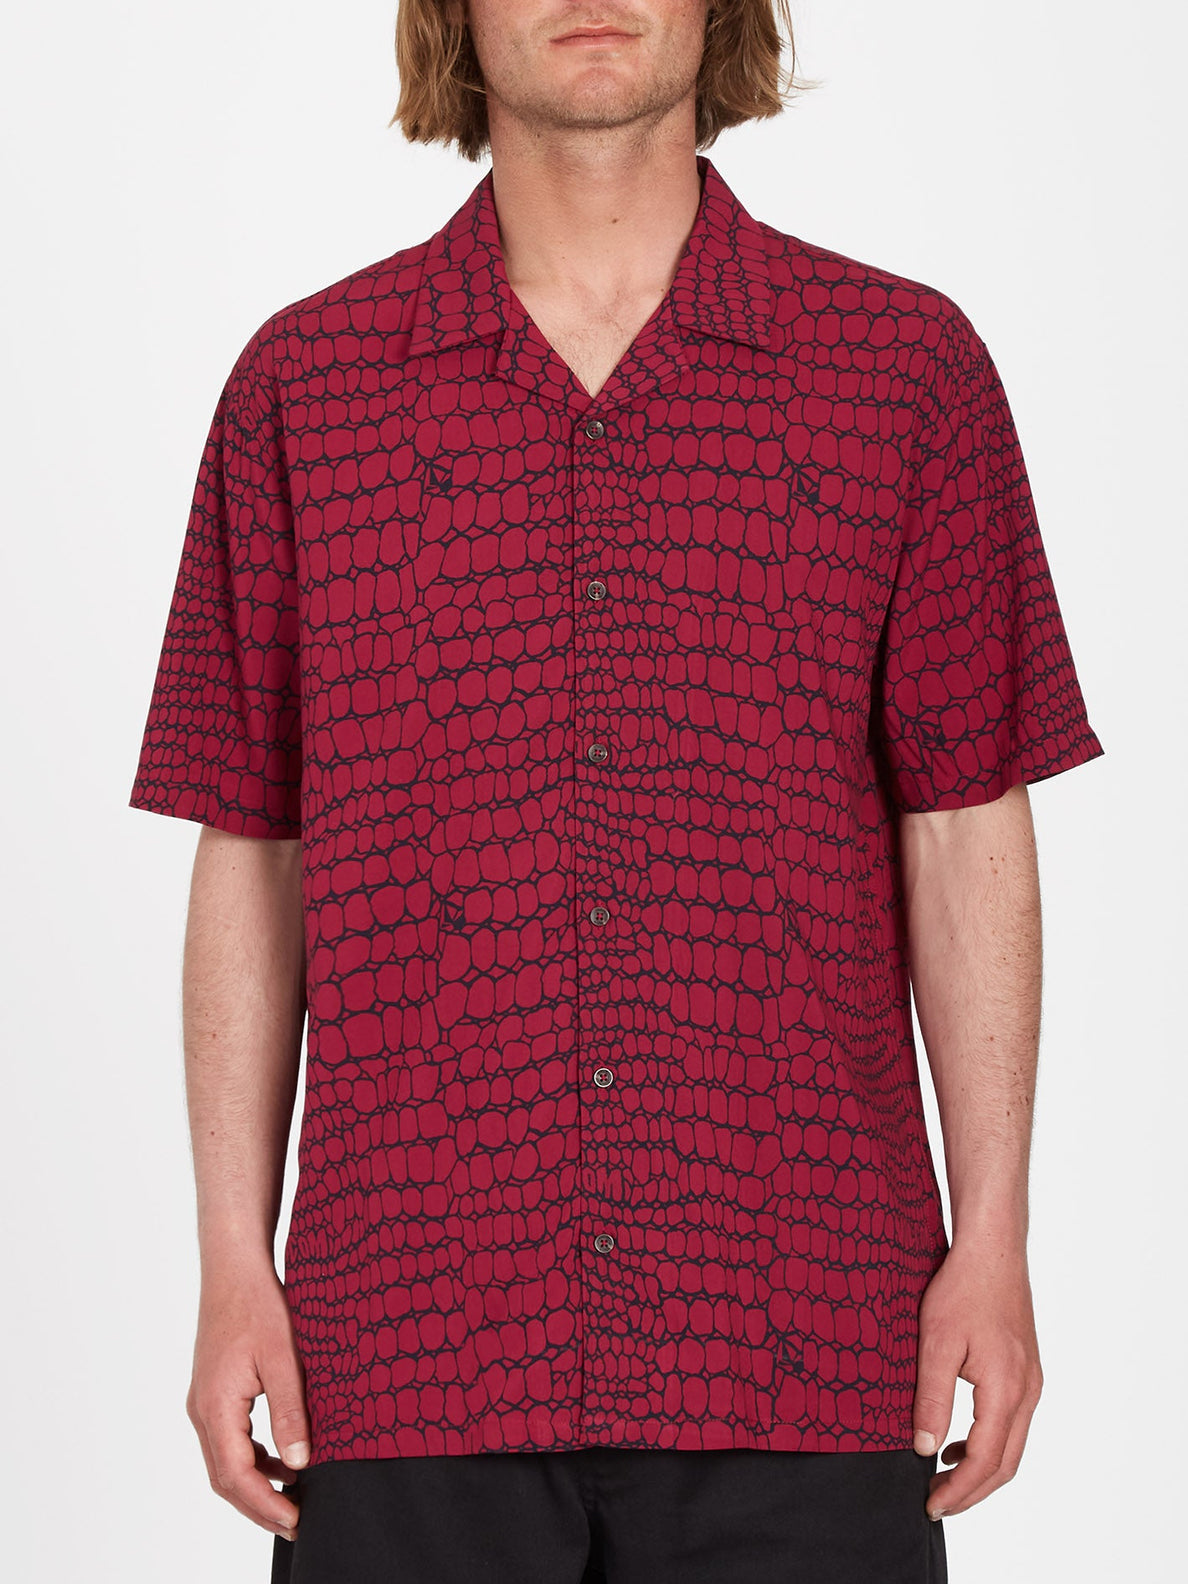 Camisa Volcom Todd Bratrud Print | Camisas de hombre | Camisas manga corta | Volcom Shop | surfdevils.com